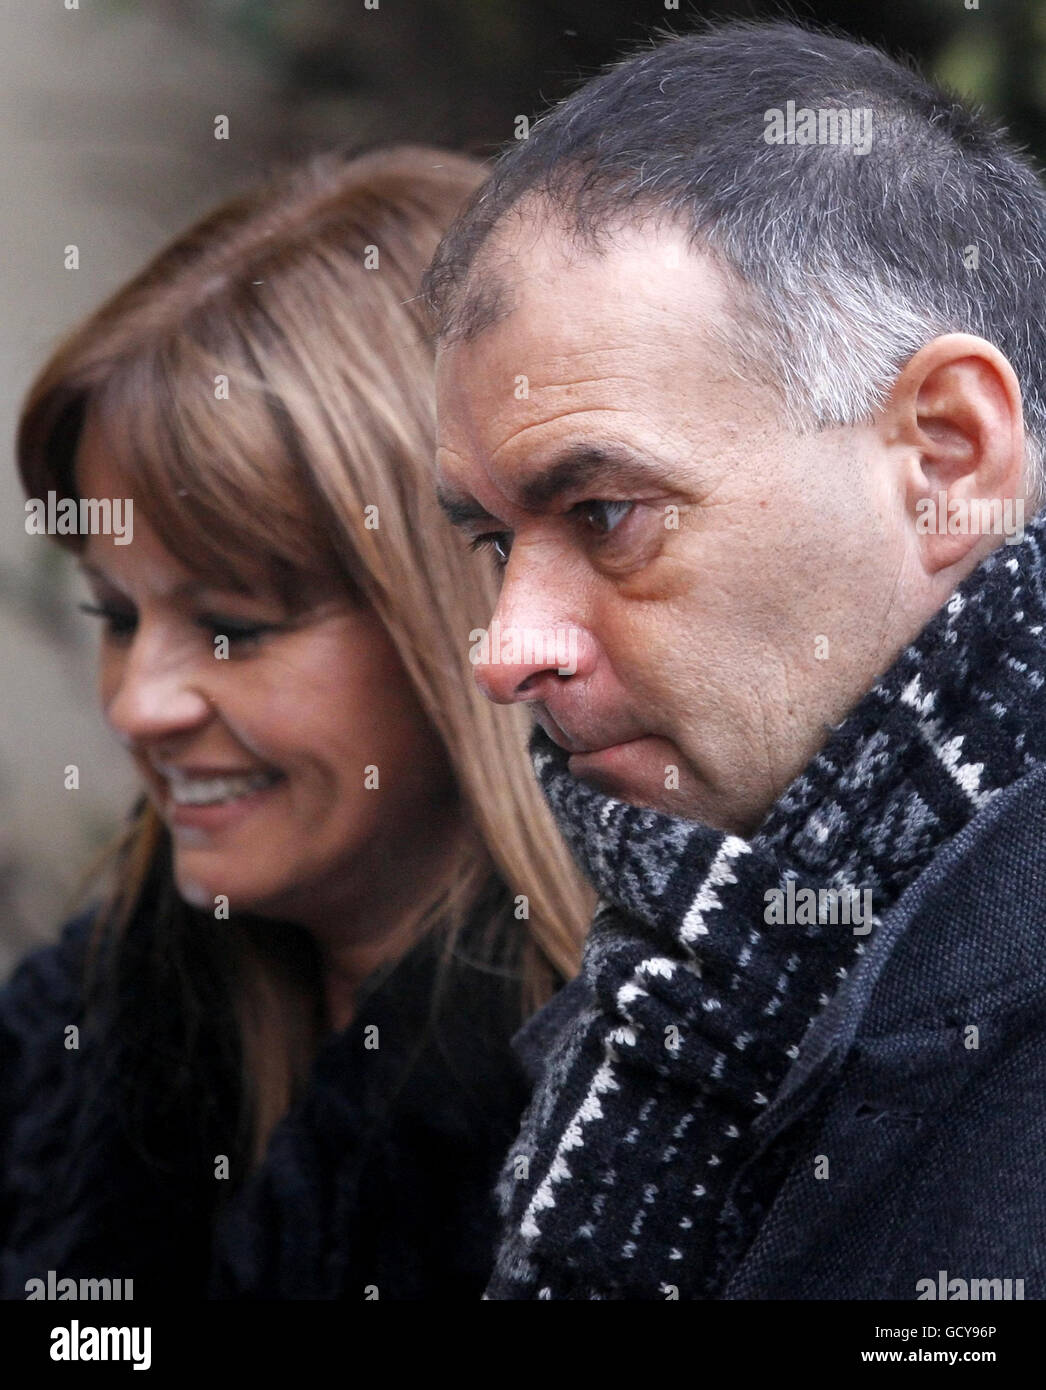 Tommy e Gail Sheridan arrivano alla High Court di Glasgow, dove sono sotto processo accusati di aver mentito sotto giuramento durante la riuscita azione di diffamazione del signor Sheridan contro il giornale News of the World del 2006. Foto Stock